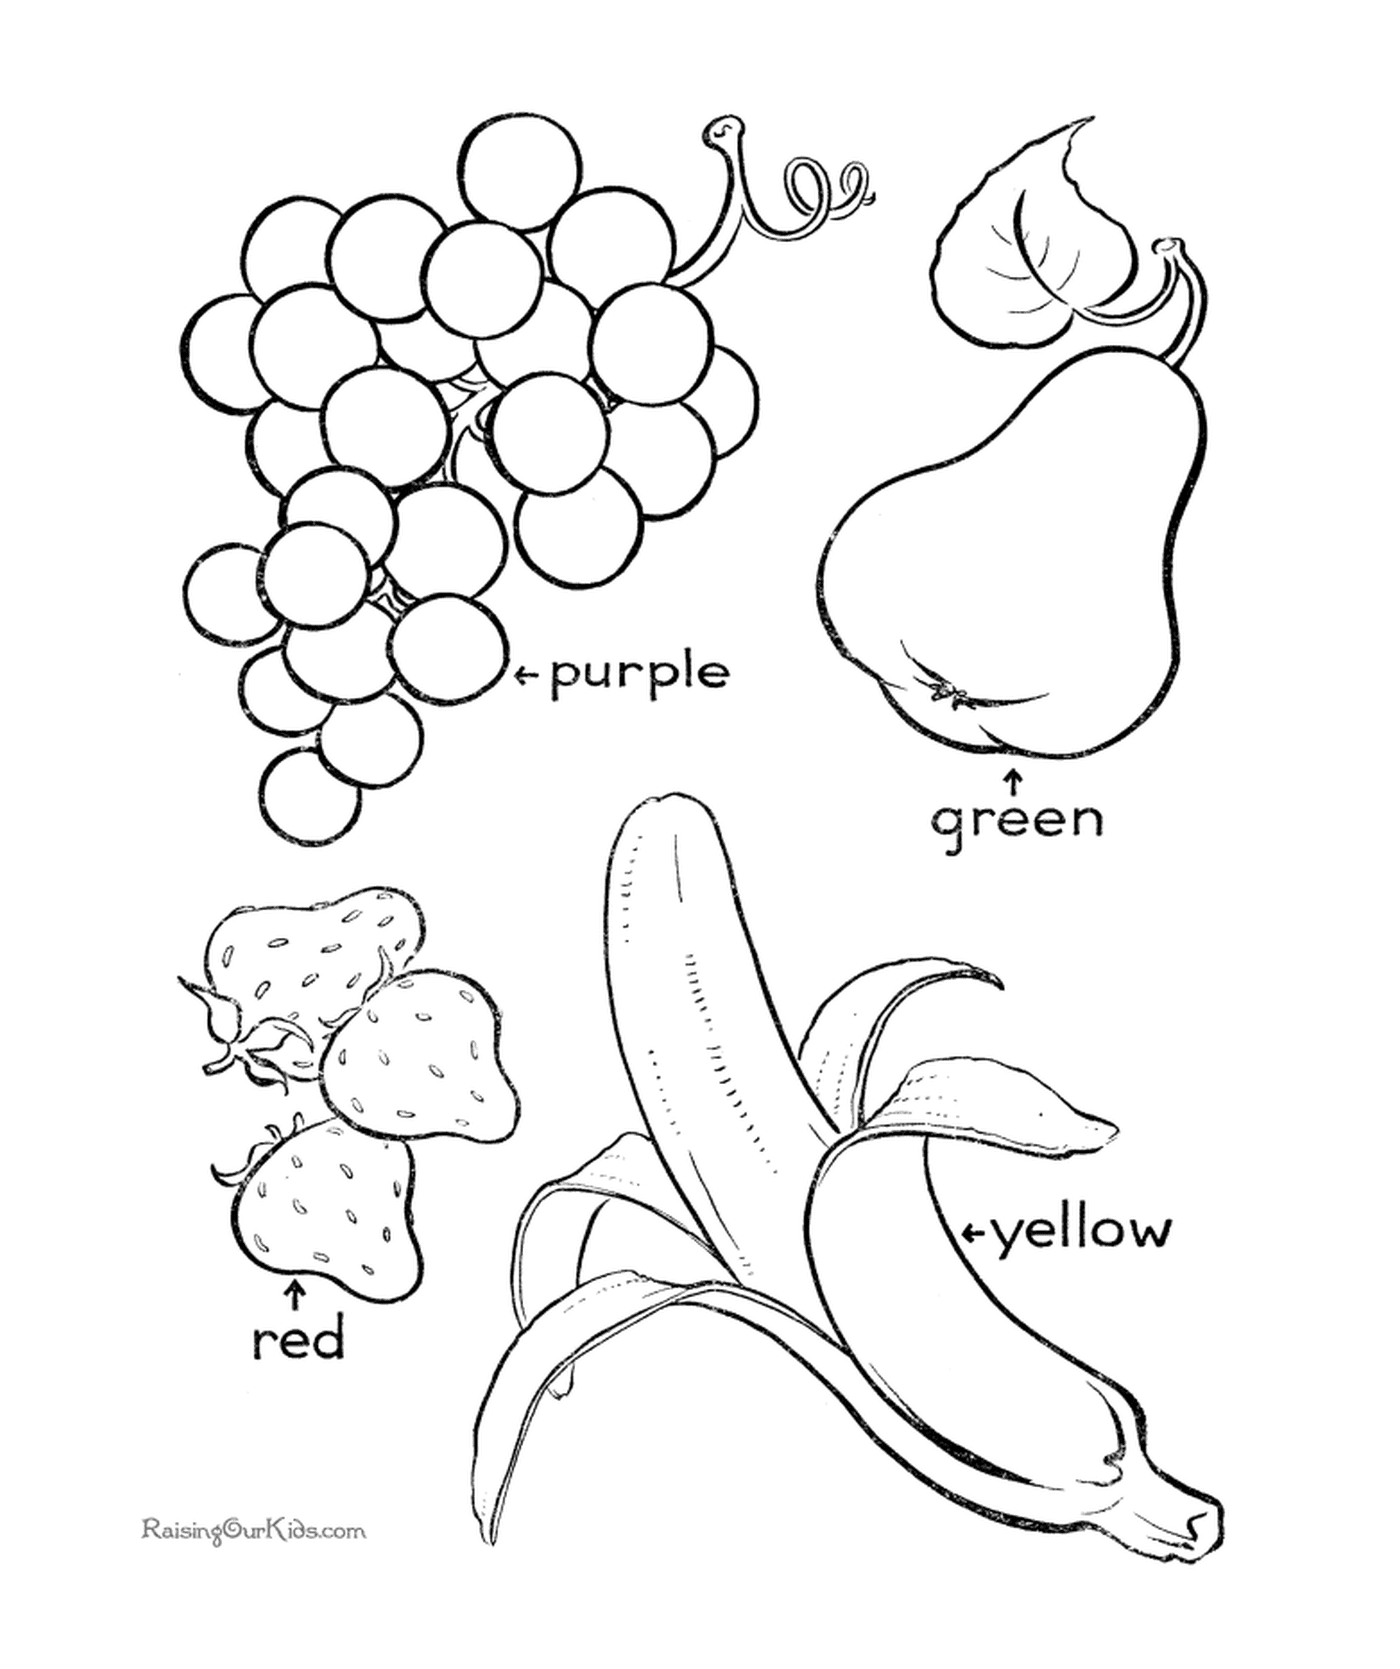  Mezcla de frutas coloreadas 